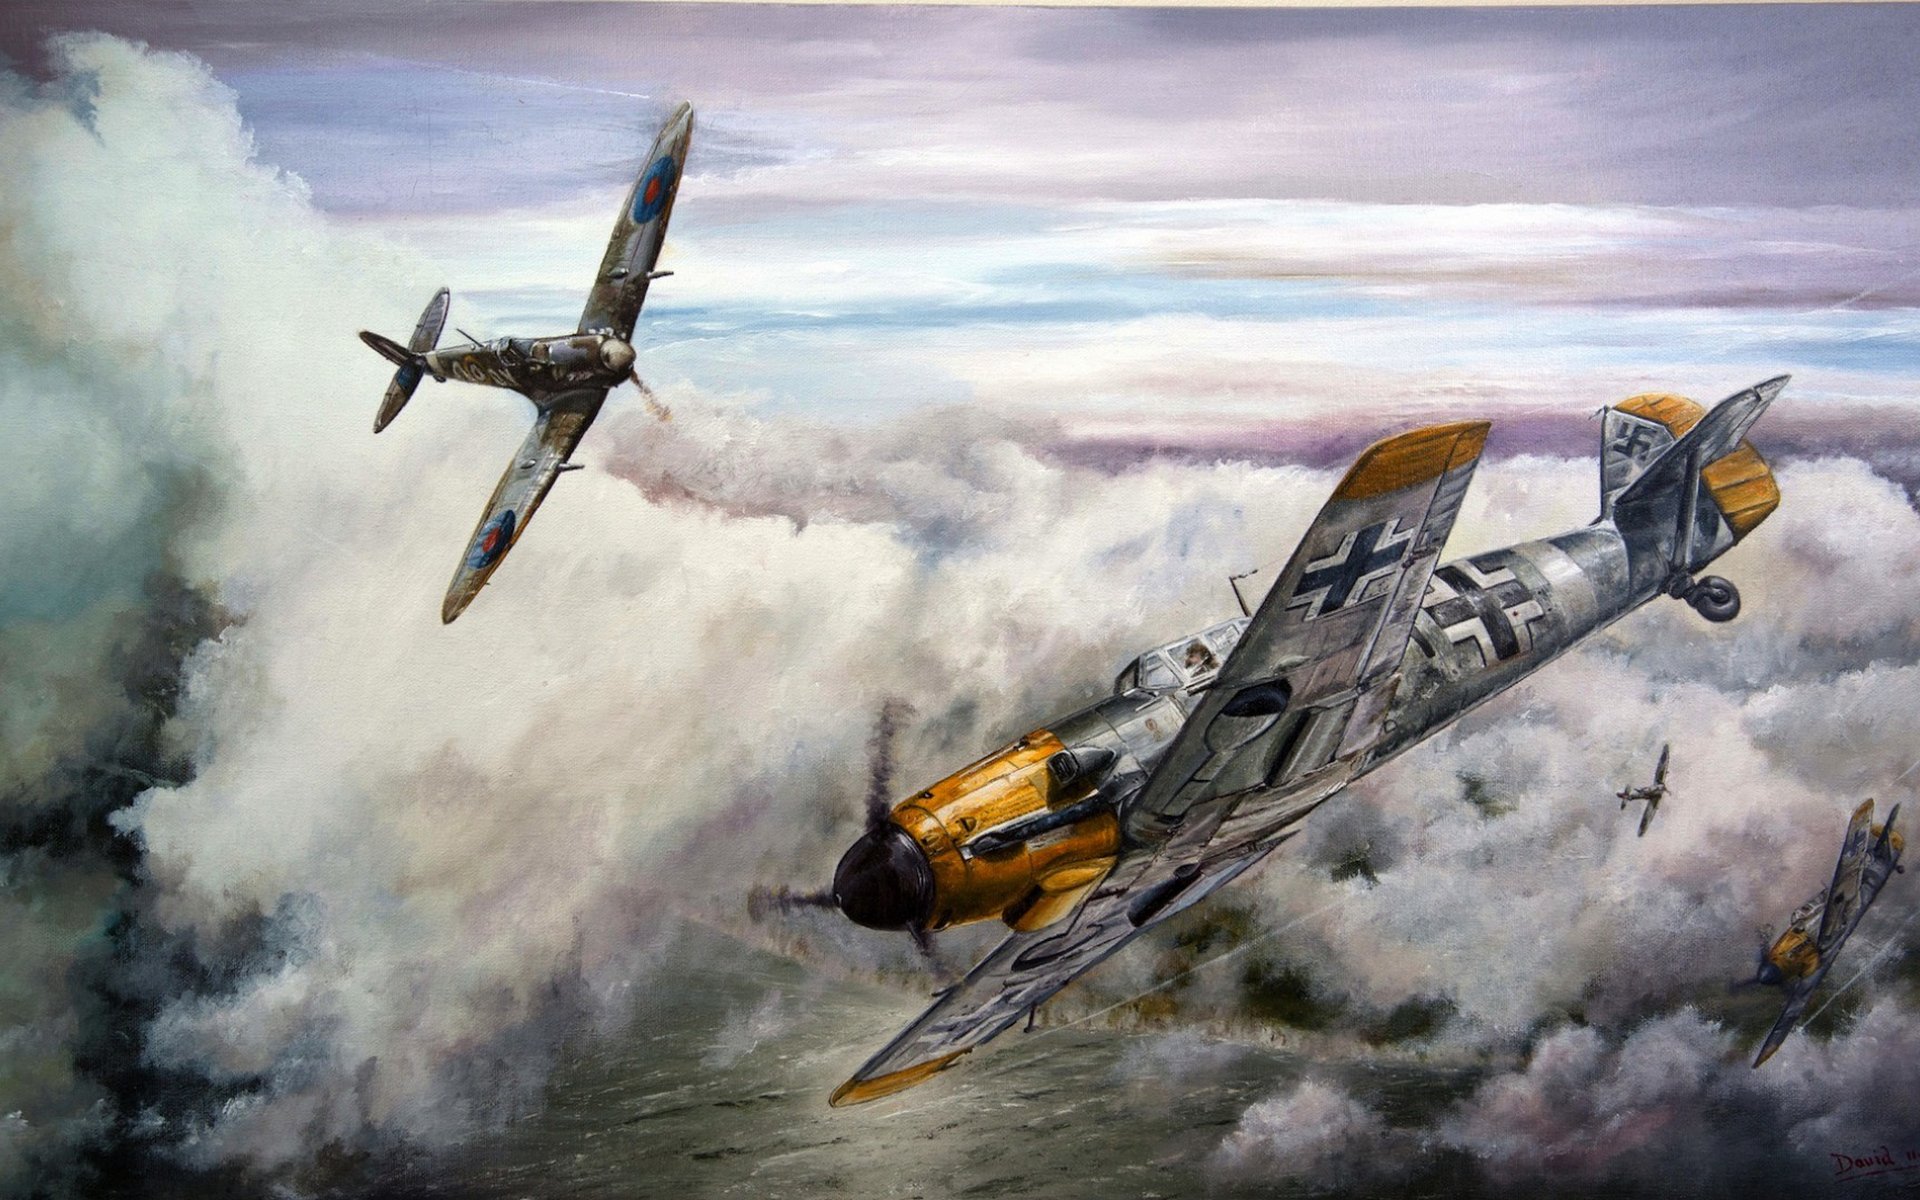 Messerschmitt Bf 109 Wallpapers